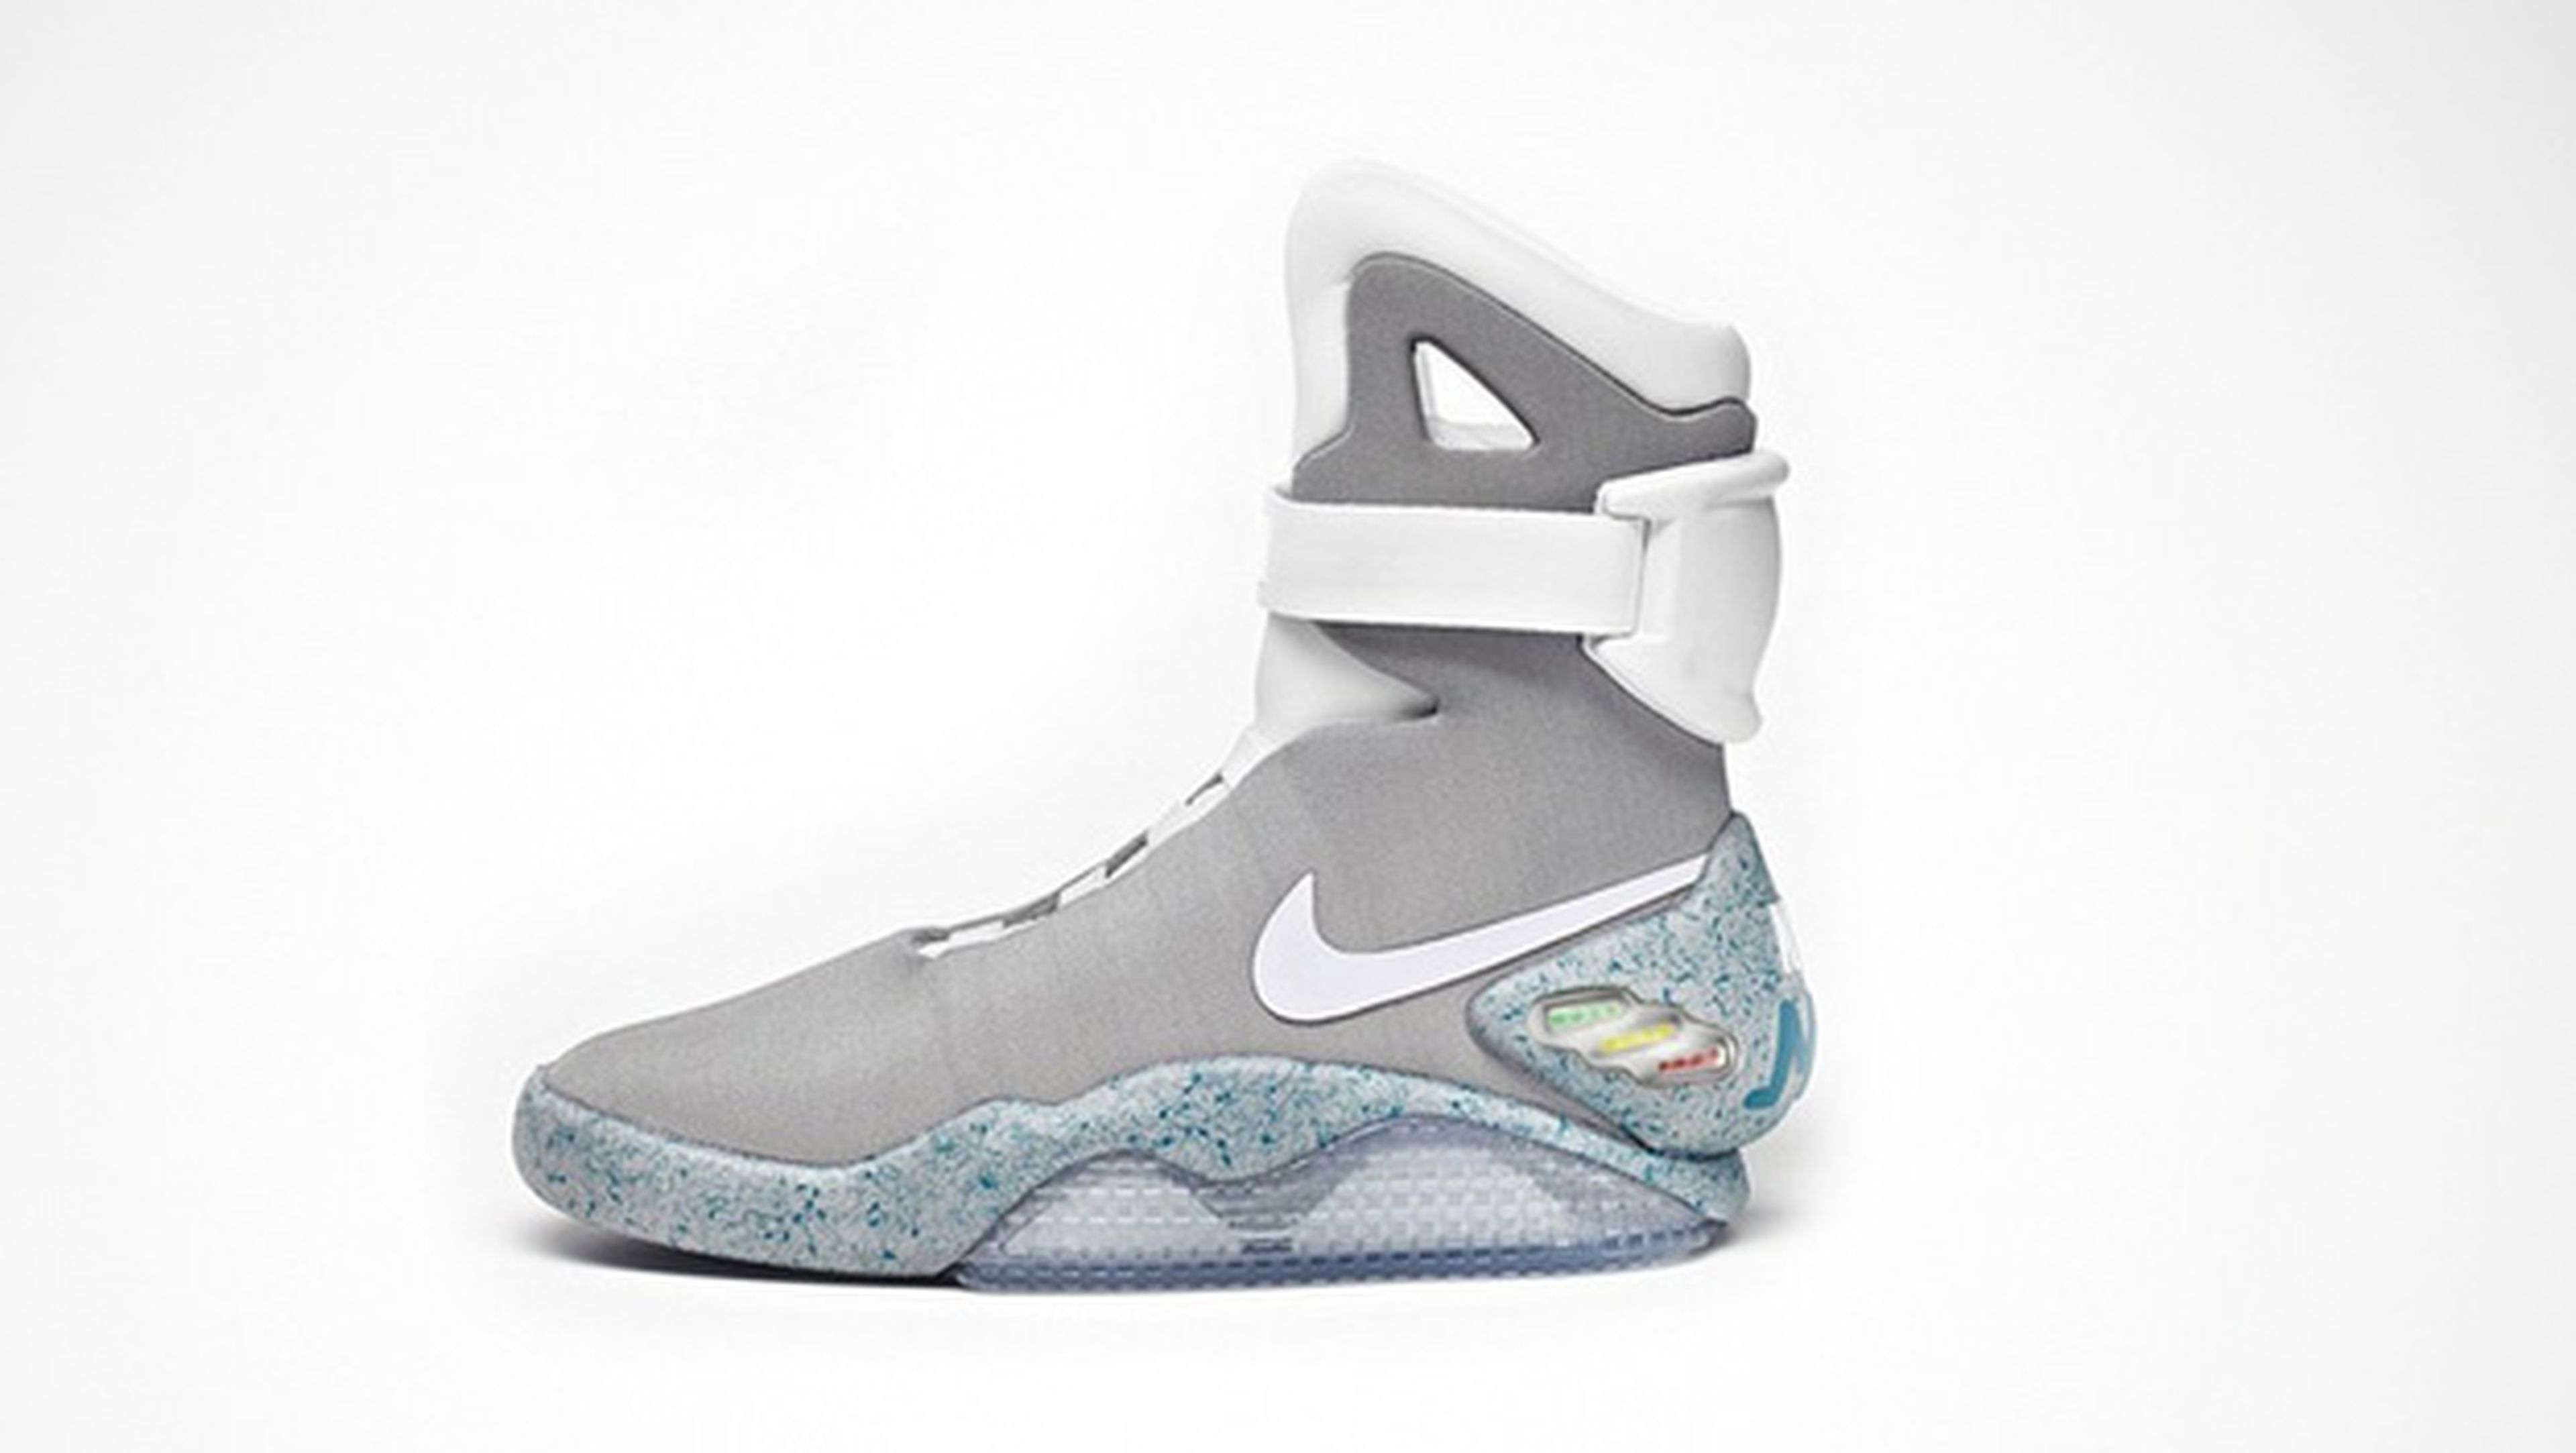 mi aprobar Objeción Nike lanzará las zapatillas de Regreso al futuro en 2015 | Computer Hoy